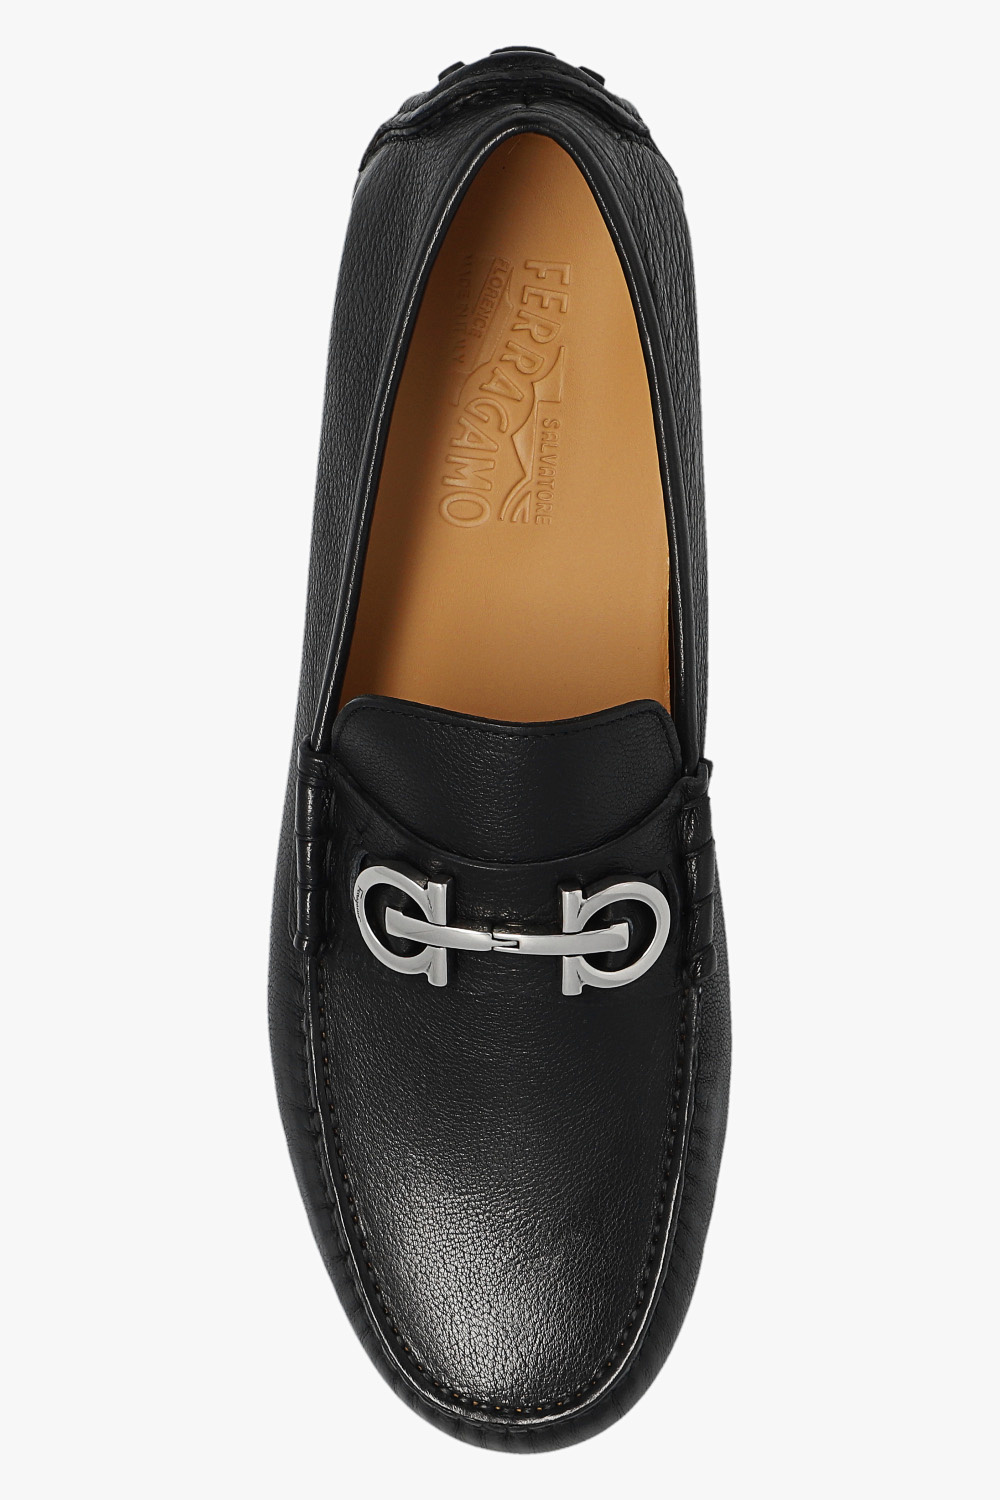 FERRAGAMO ‘Grazioso’ leather black shoes